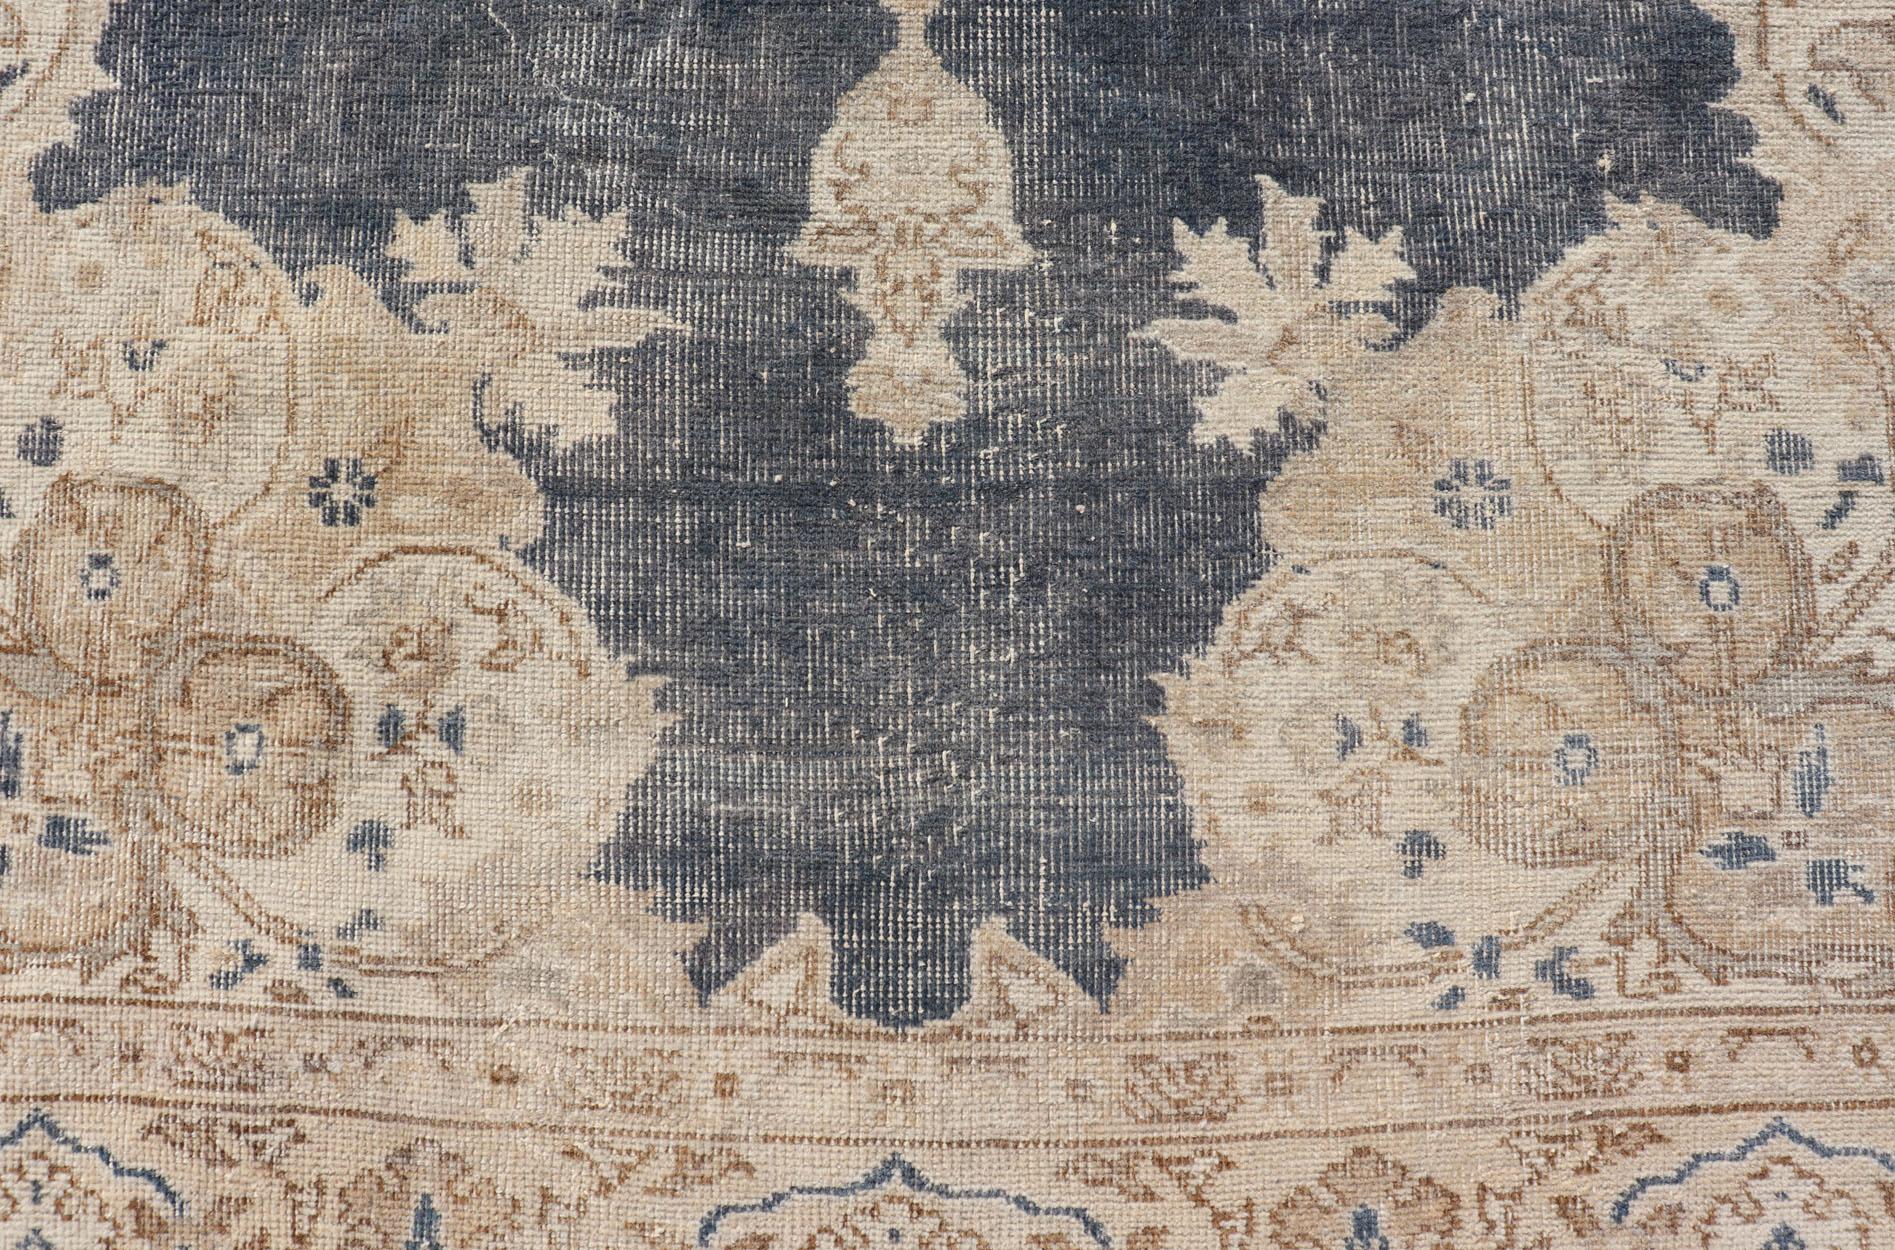 Maße: 5'2 x 8'5 
Abgenutzter türkischer Teppich mit floralem Design in Blau, Tan, Taupe und Creme. Keivan Woven Arts /  EN-14975 Teppich / Türkisch / Vintage Mitte des 20. Jahrhunderts

Dieser türkische Vintage-Teppich wurde neutralisiert, um